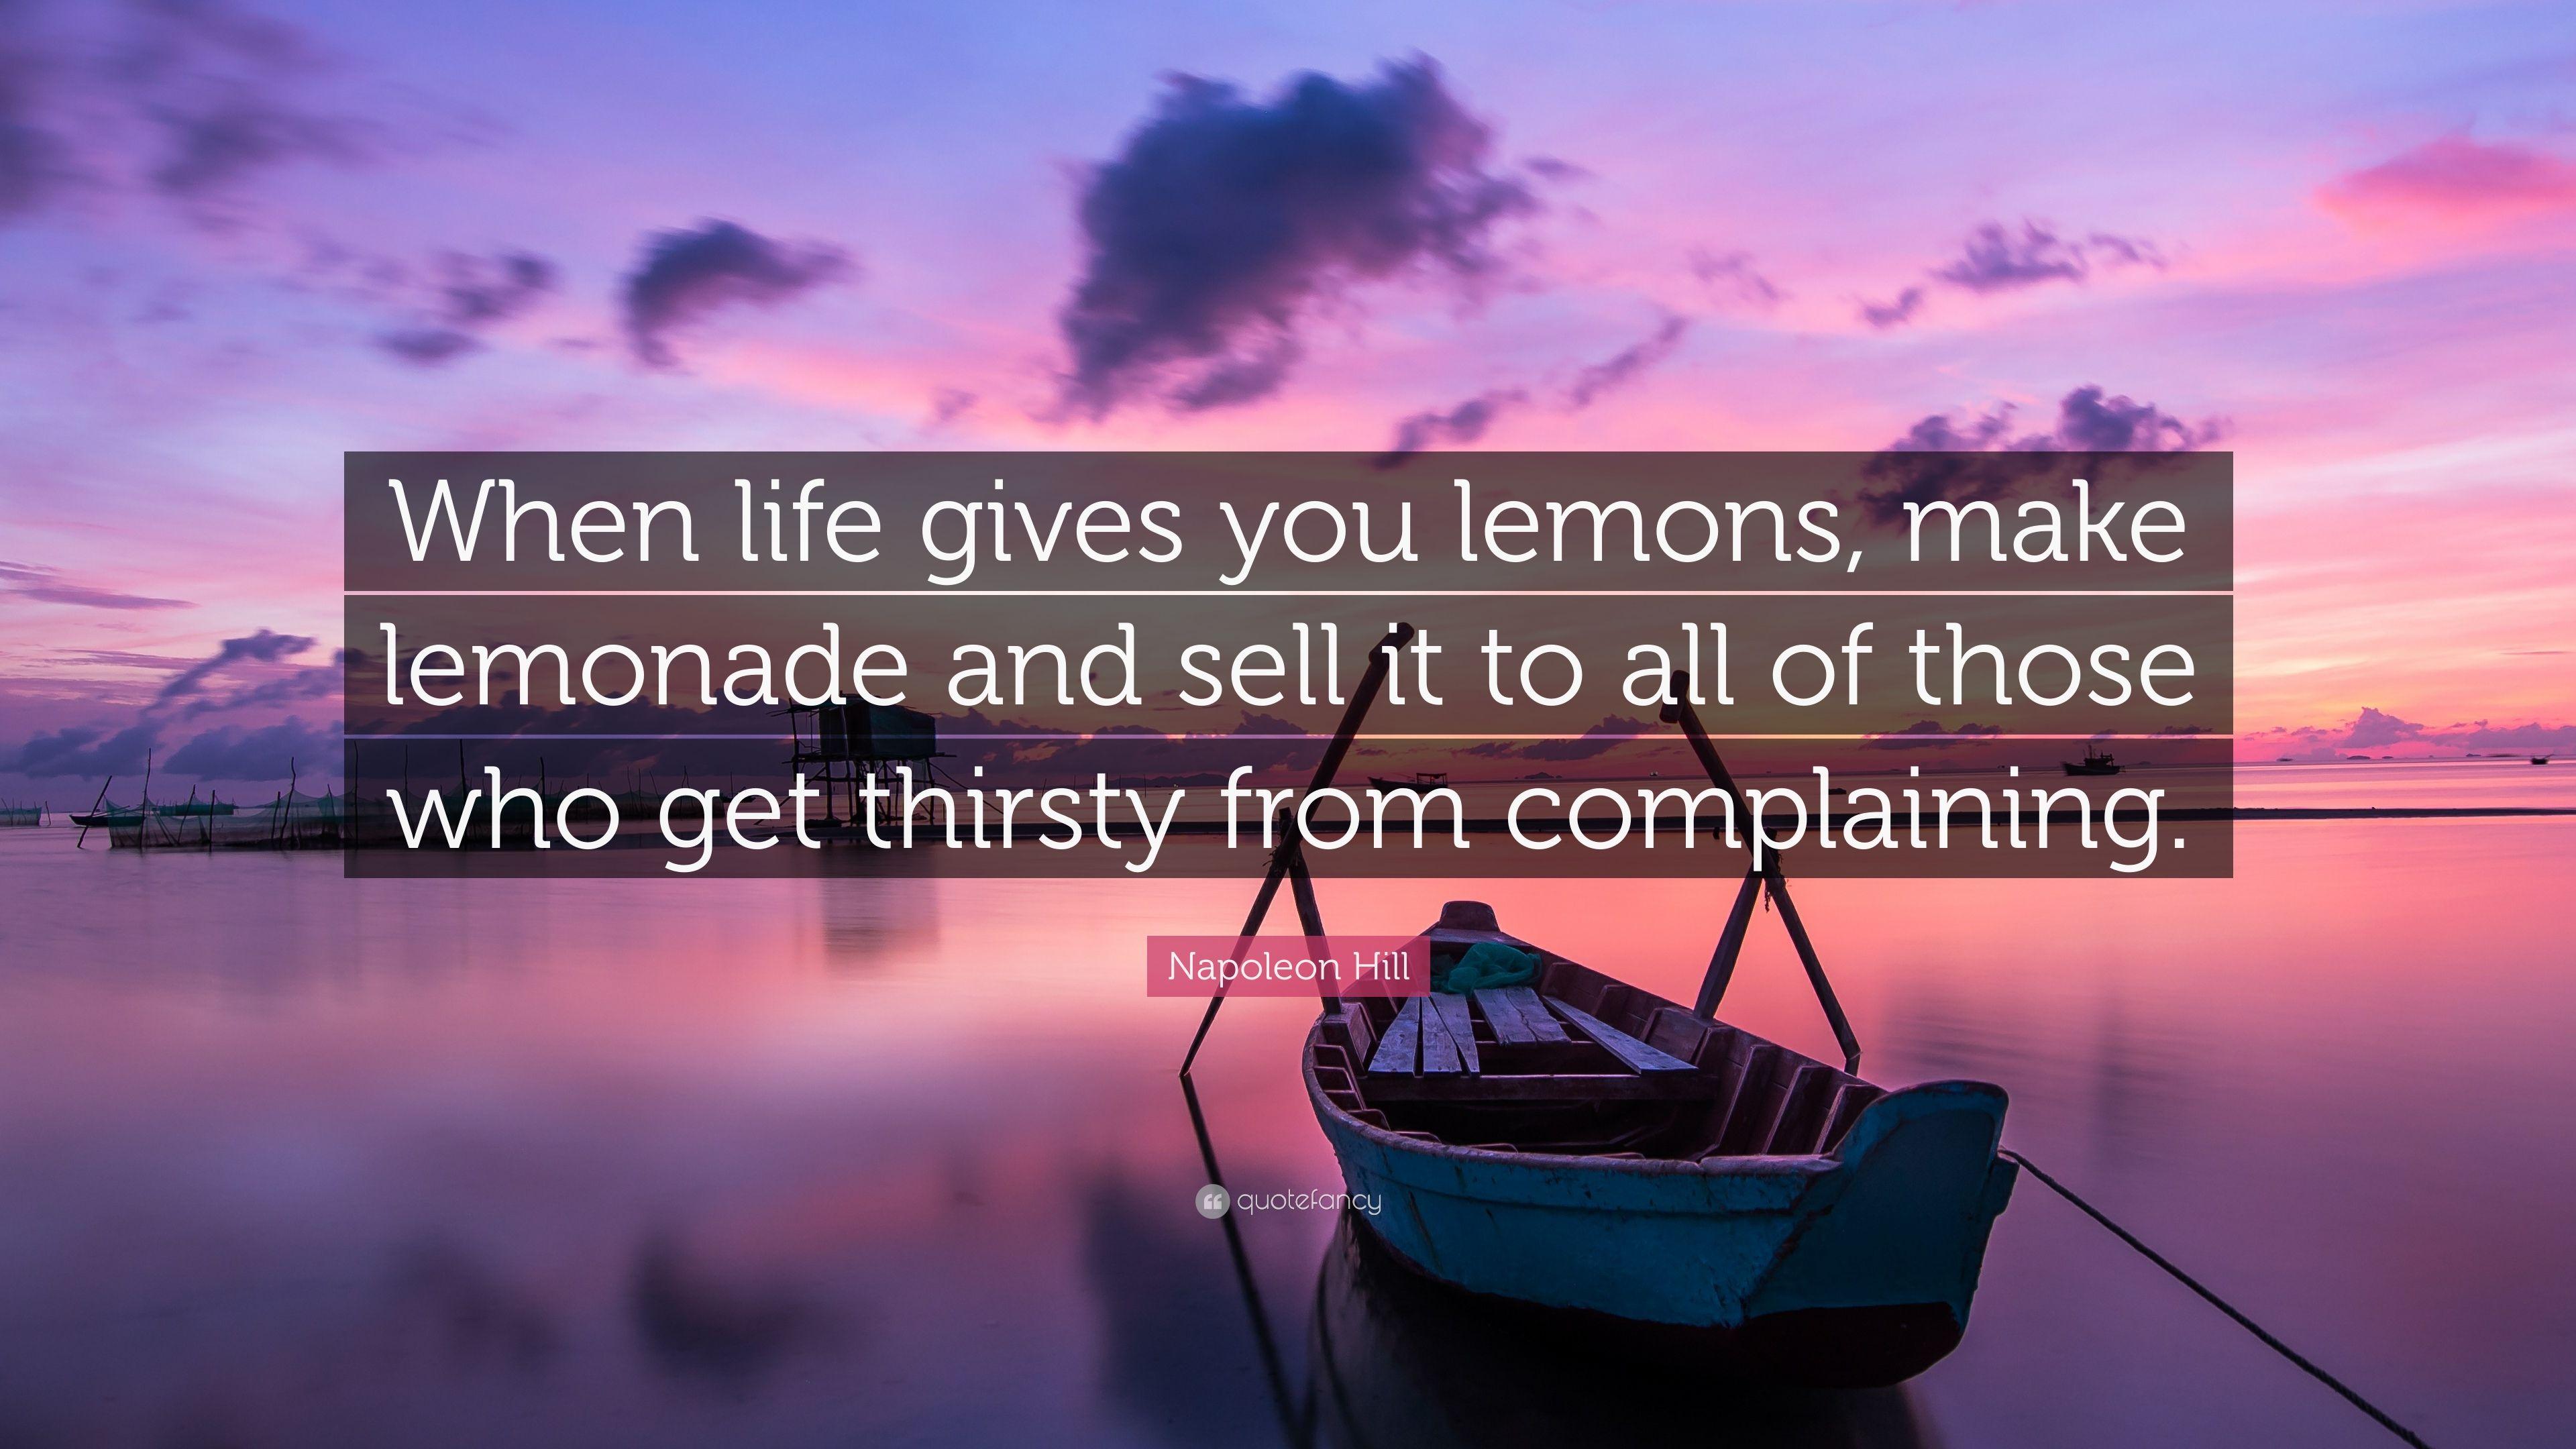 Napoleon Hill Quote: “When life gives you lemons, make lemonade